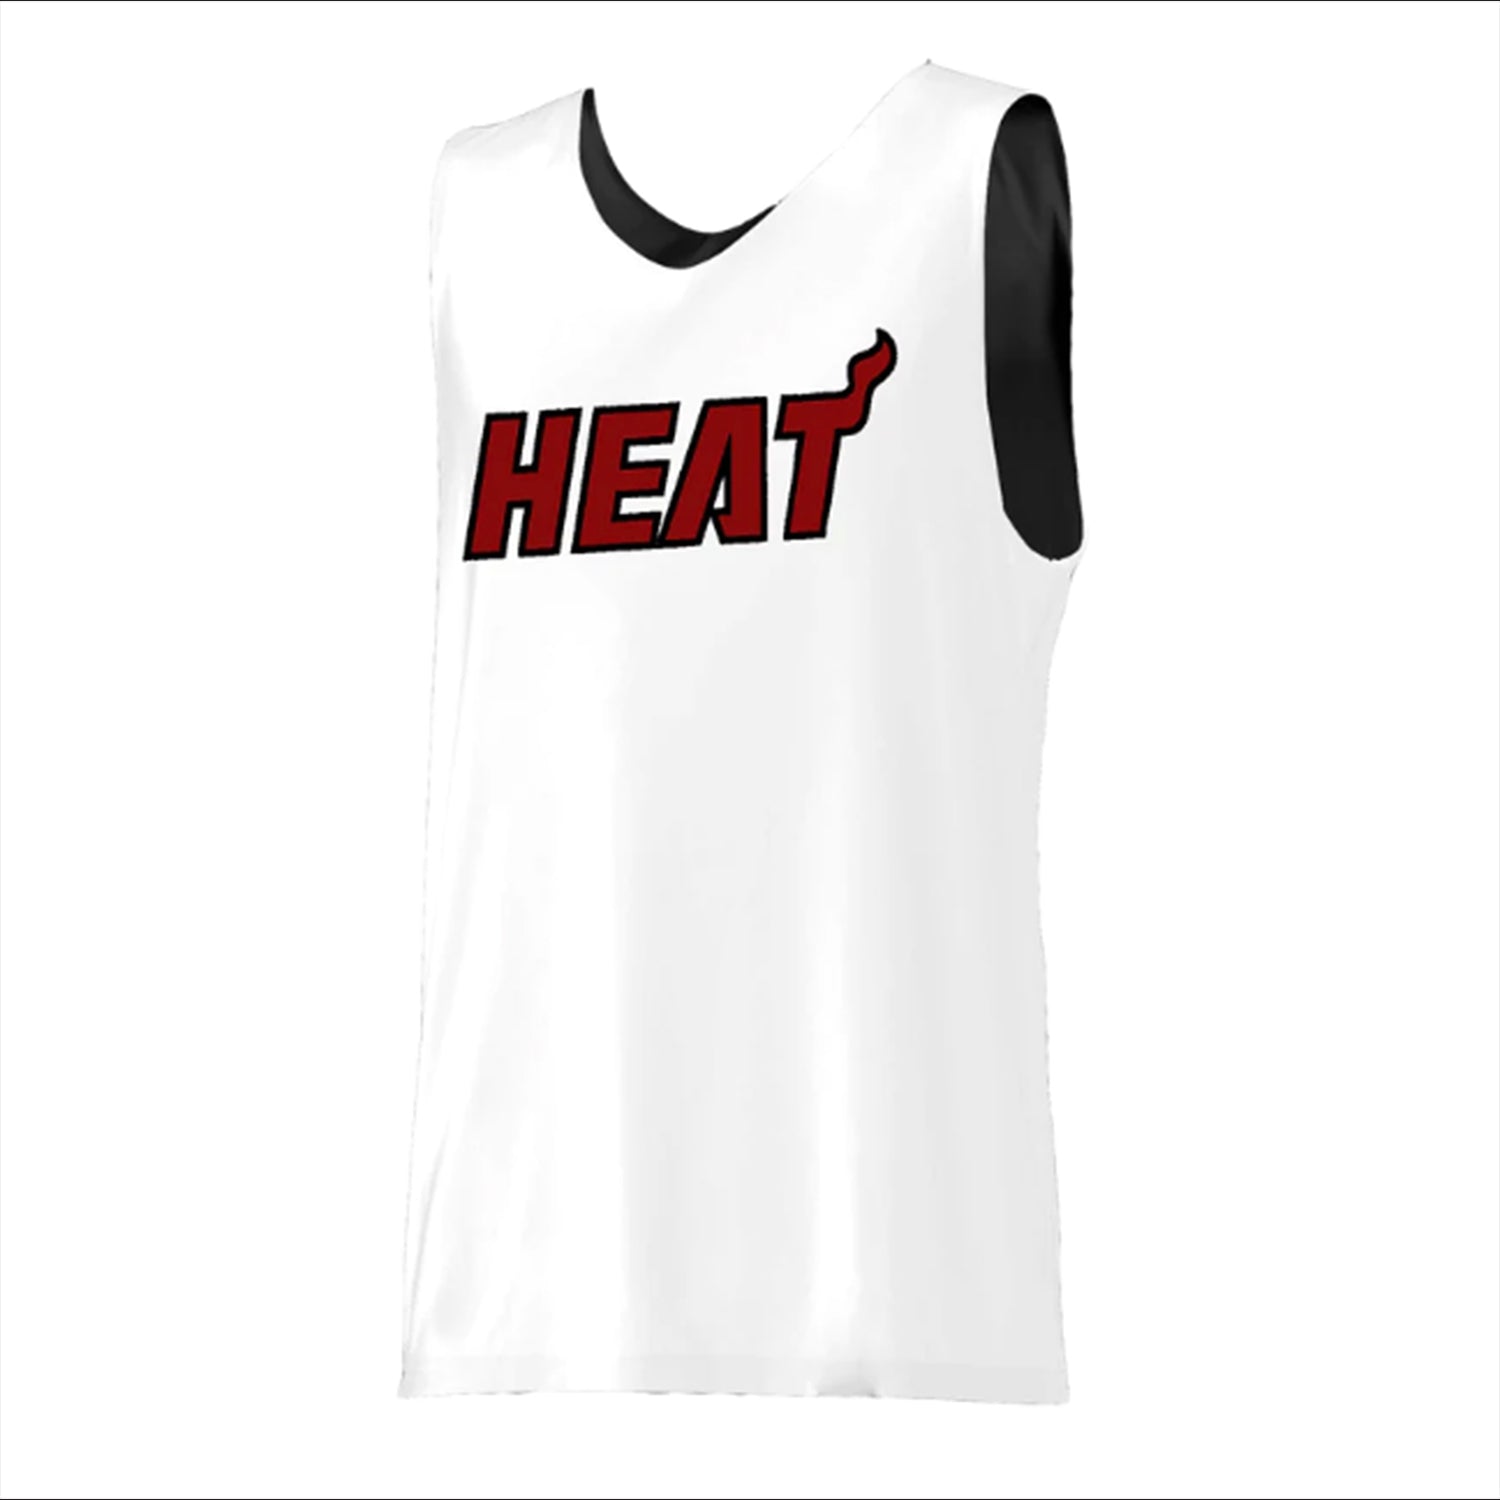 Blank Miami Heat Basketball Jerseys w/ Braiding, MIA Heat